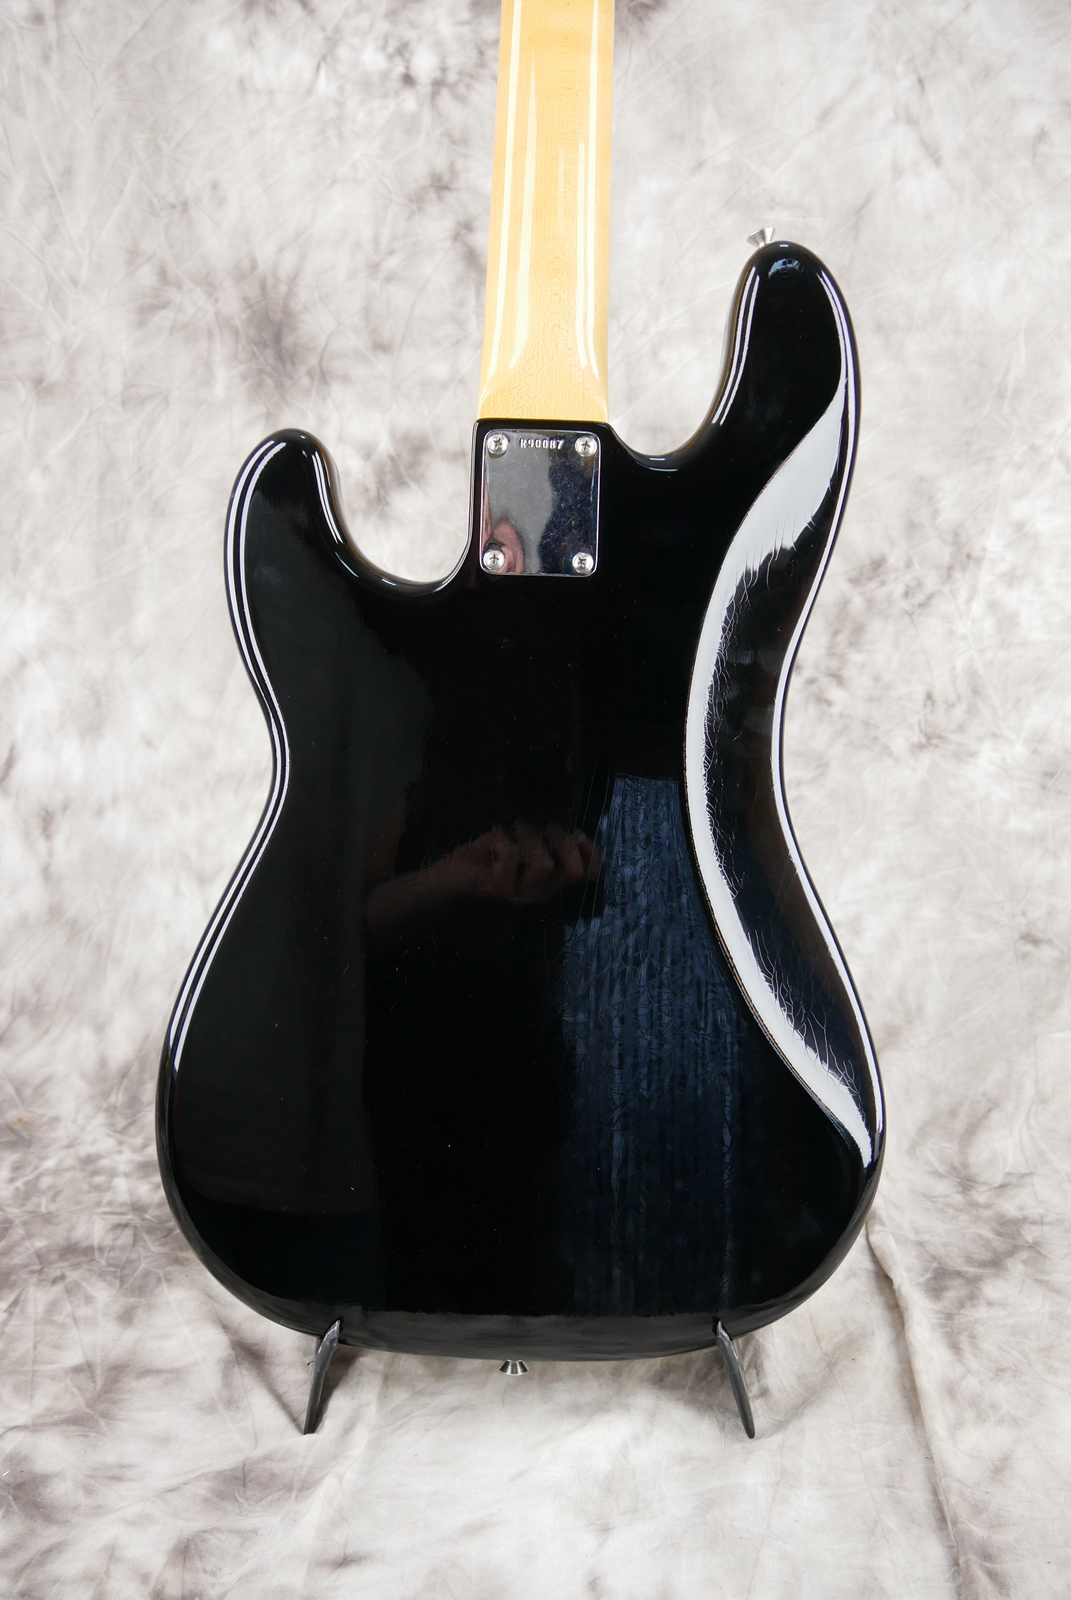 Fender-Precision-Bass-59-RI-black-Custom-Shop-ebony-fretboard-004.JPG